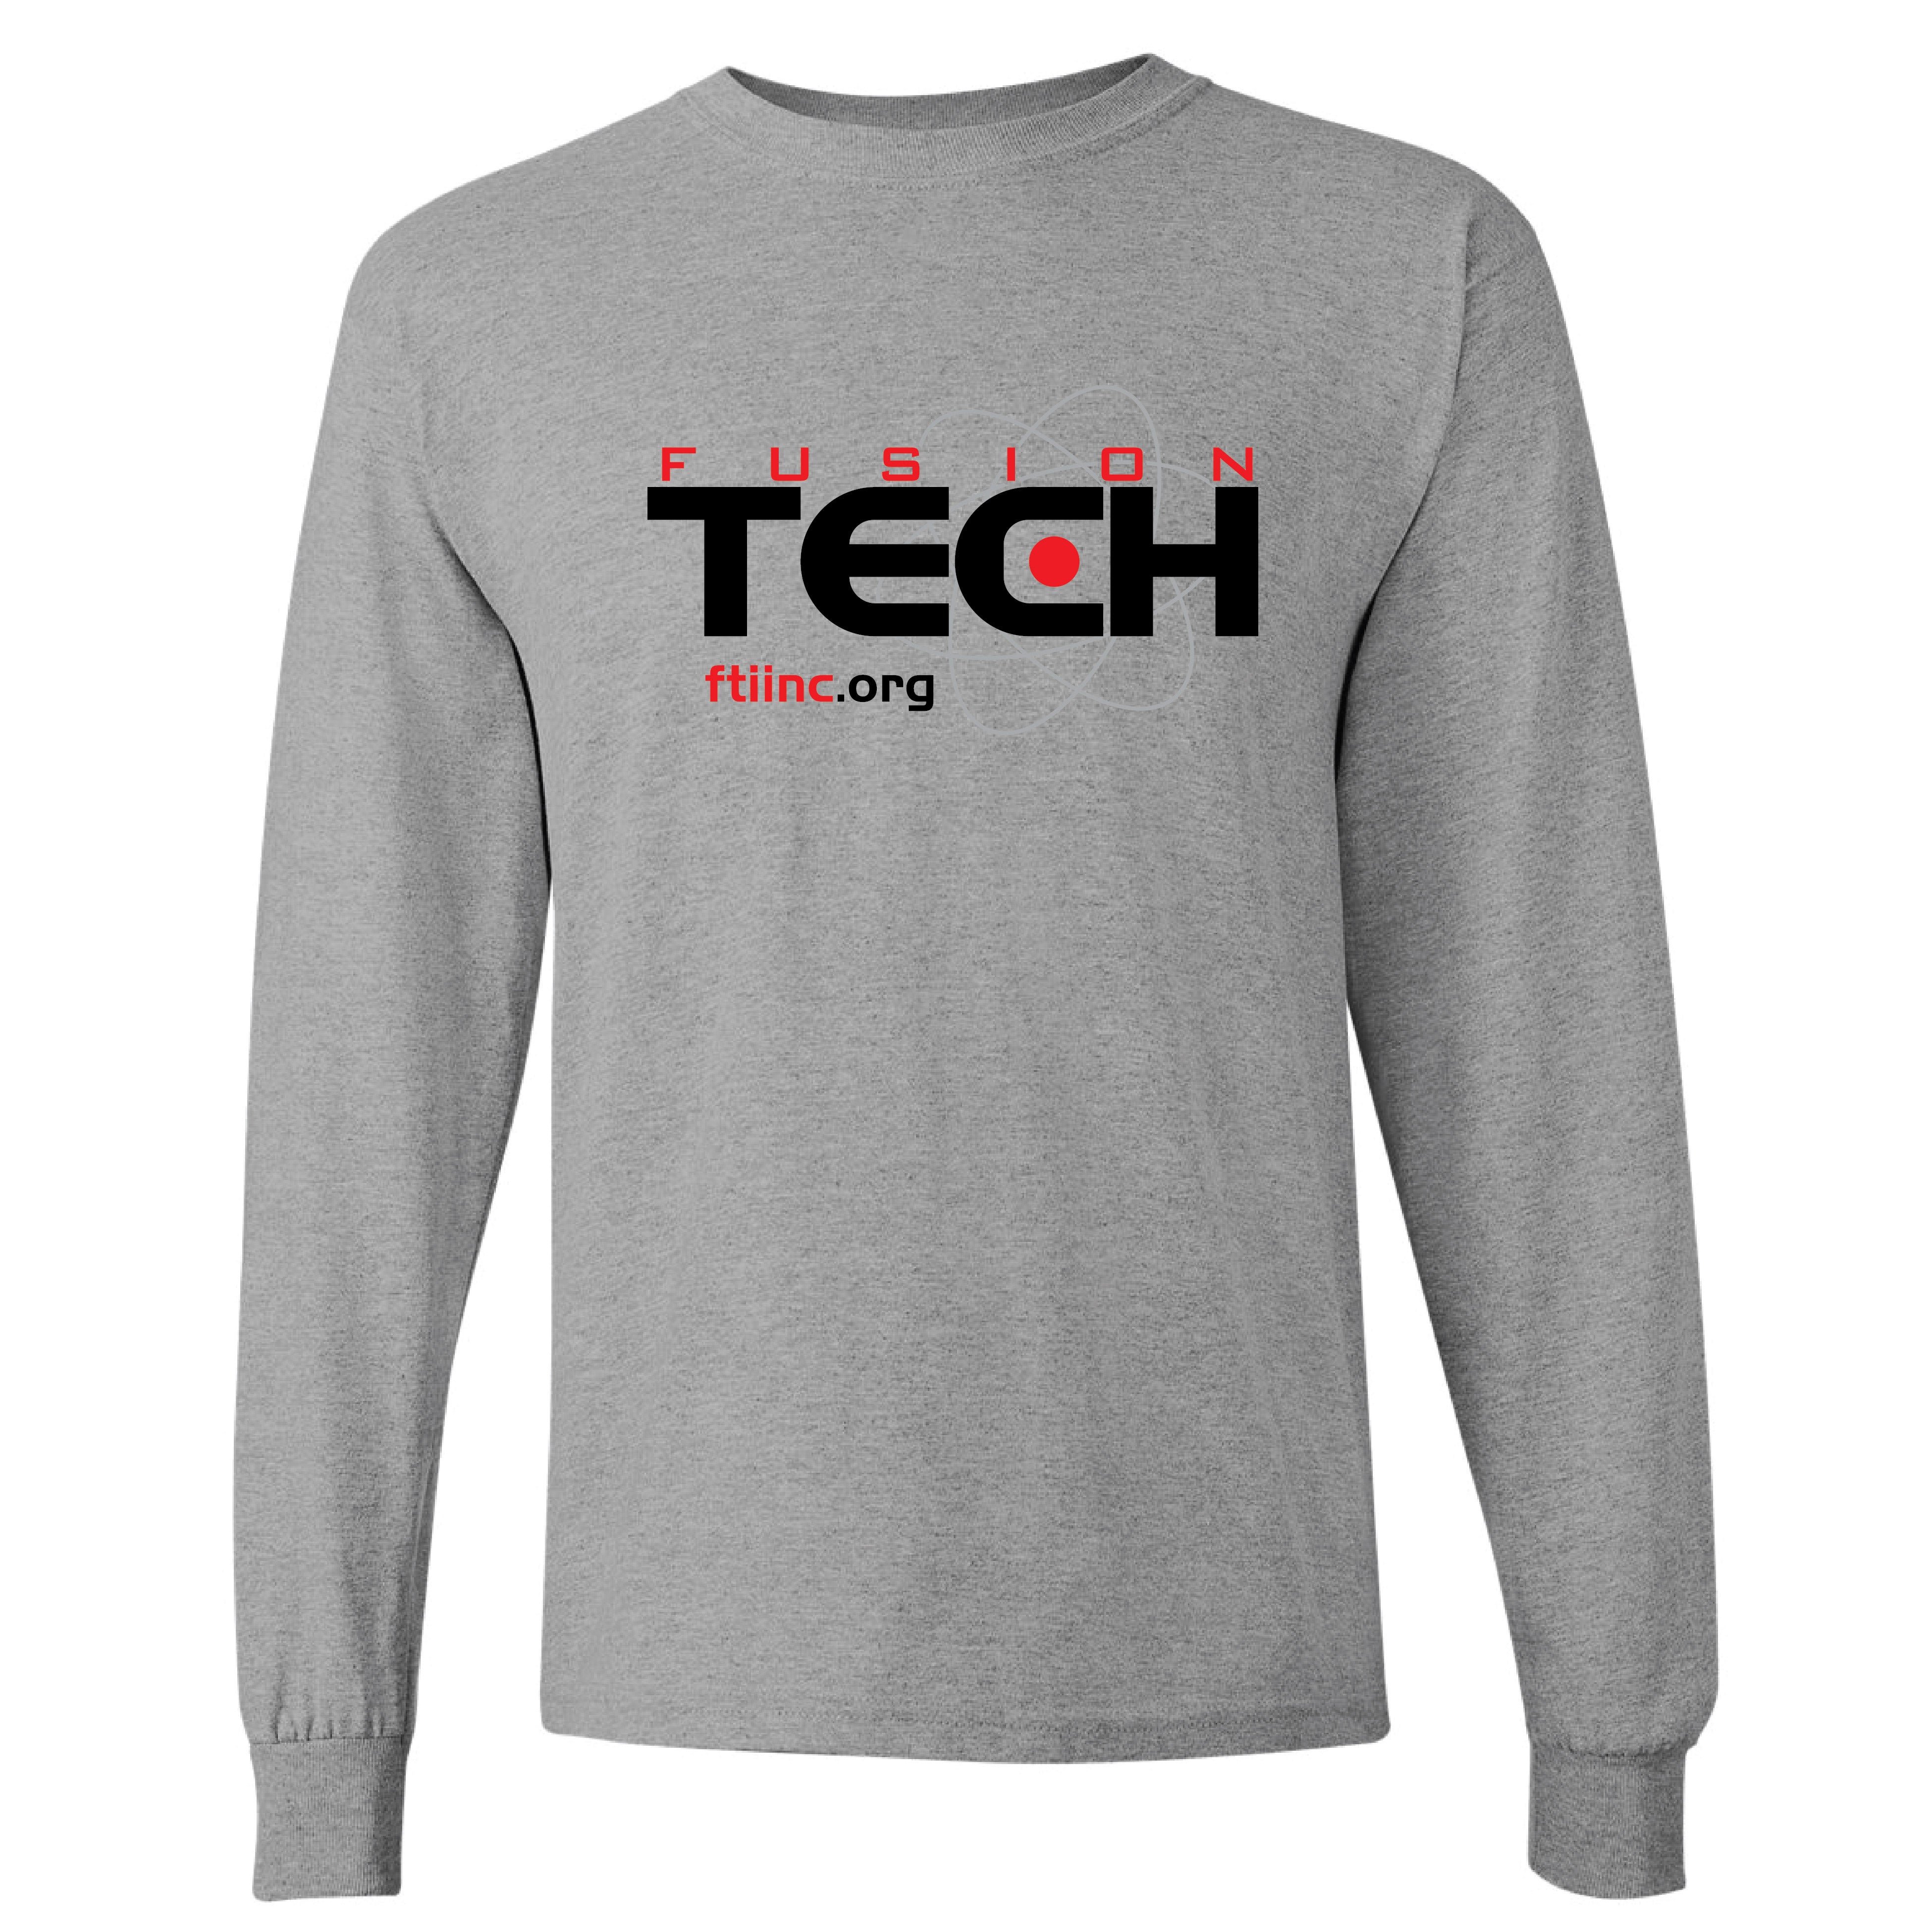 Fusion Tech Screenprinted Tall Longsleeve T-Shirt